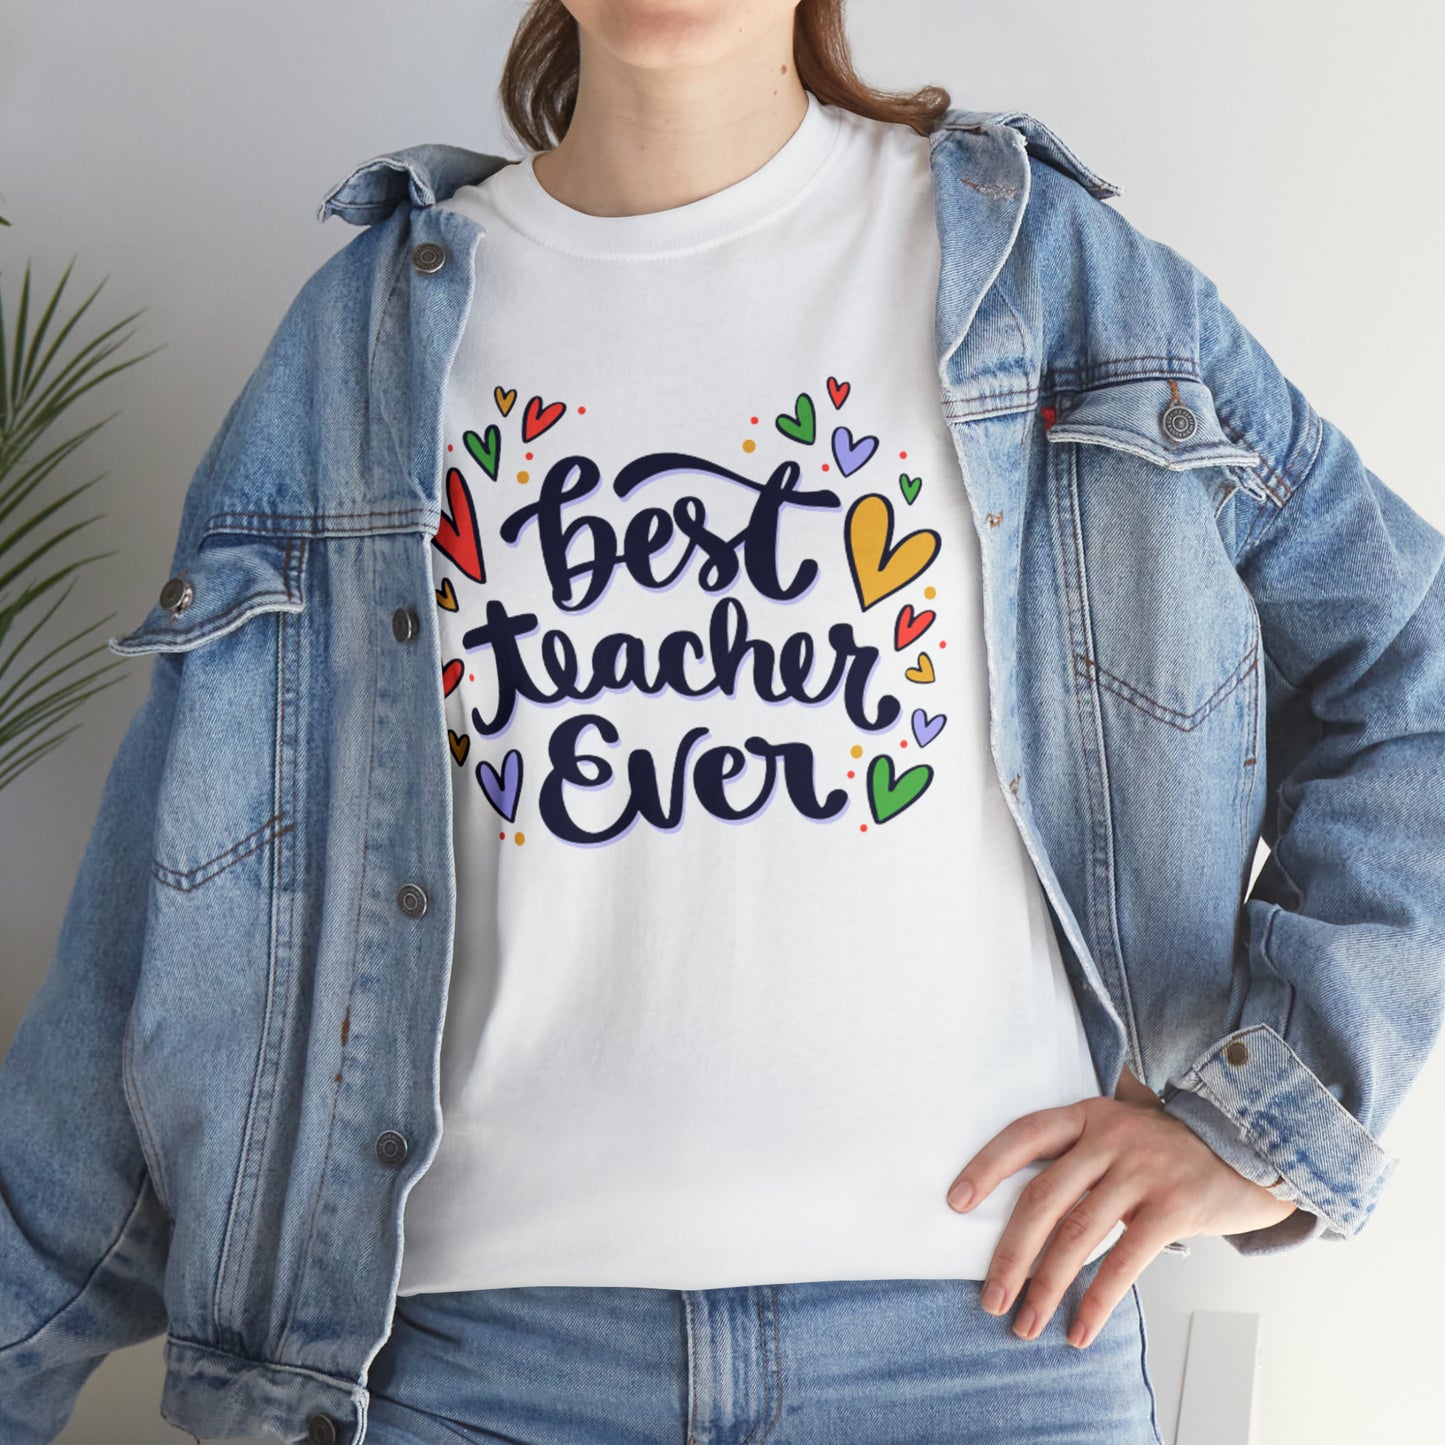 IDK Teacher Shirt